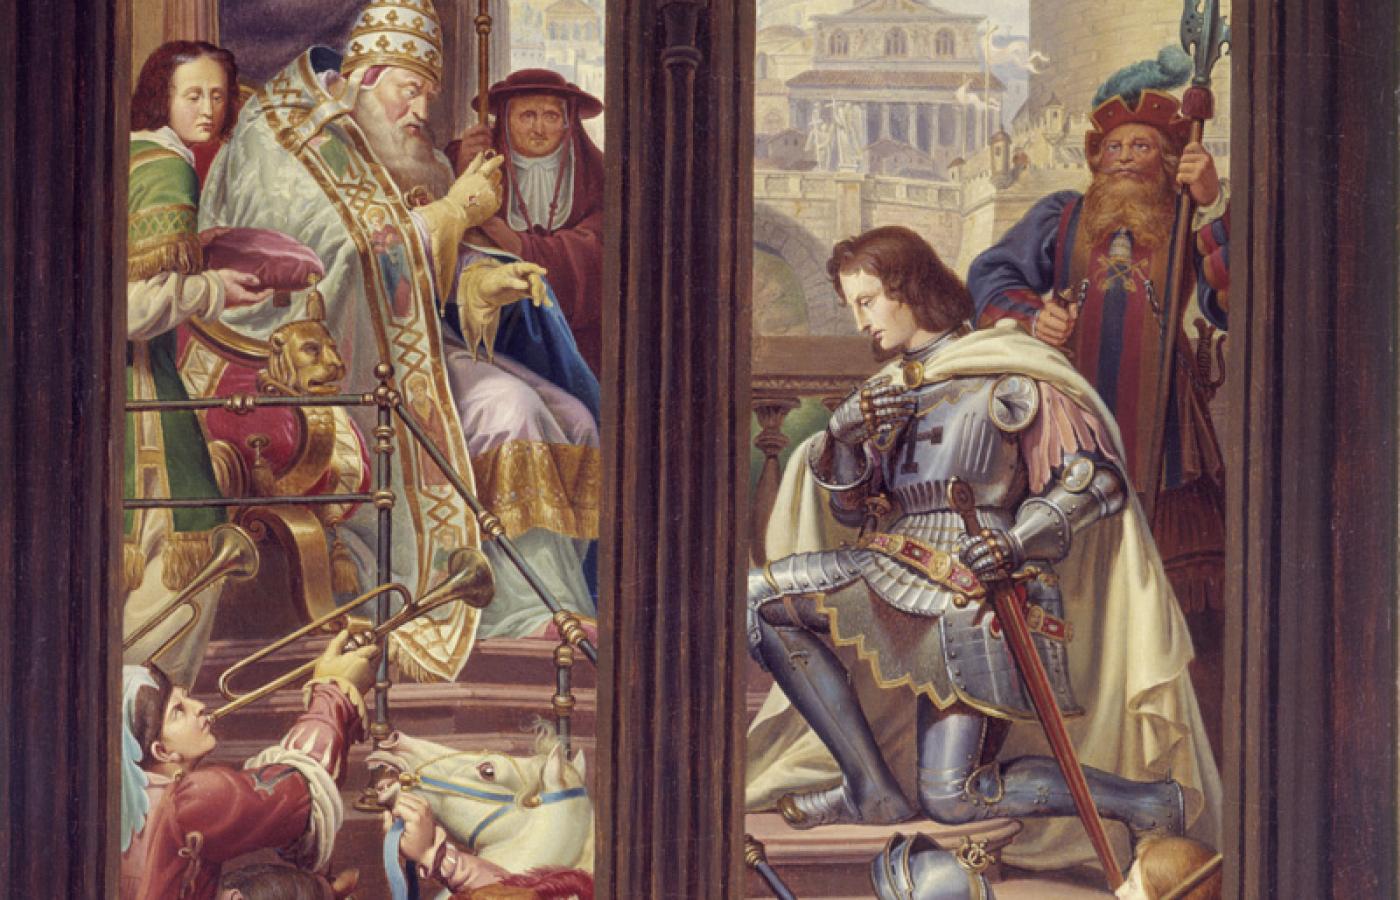 Herman von Salza, czwarty wielki mistrz i twórca potęgi Krzyżaków, otrzymuje pierścień od papieża Innocentego III